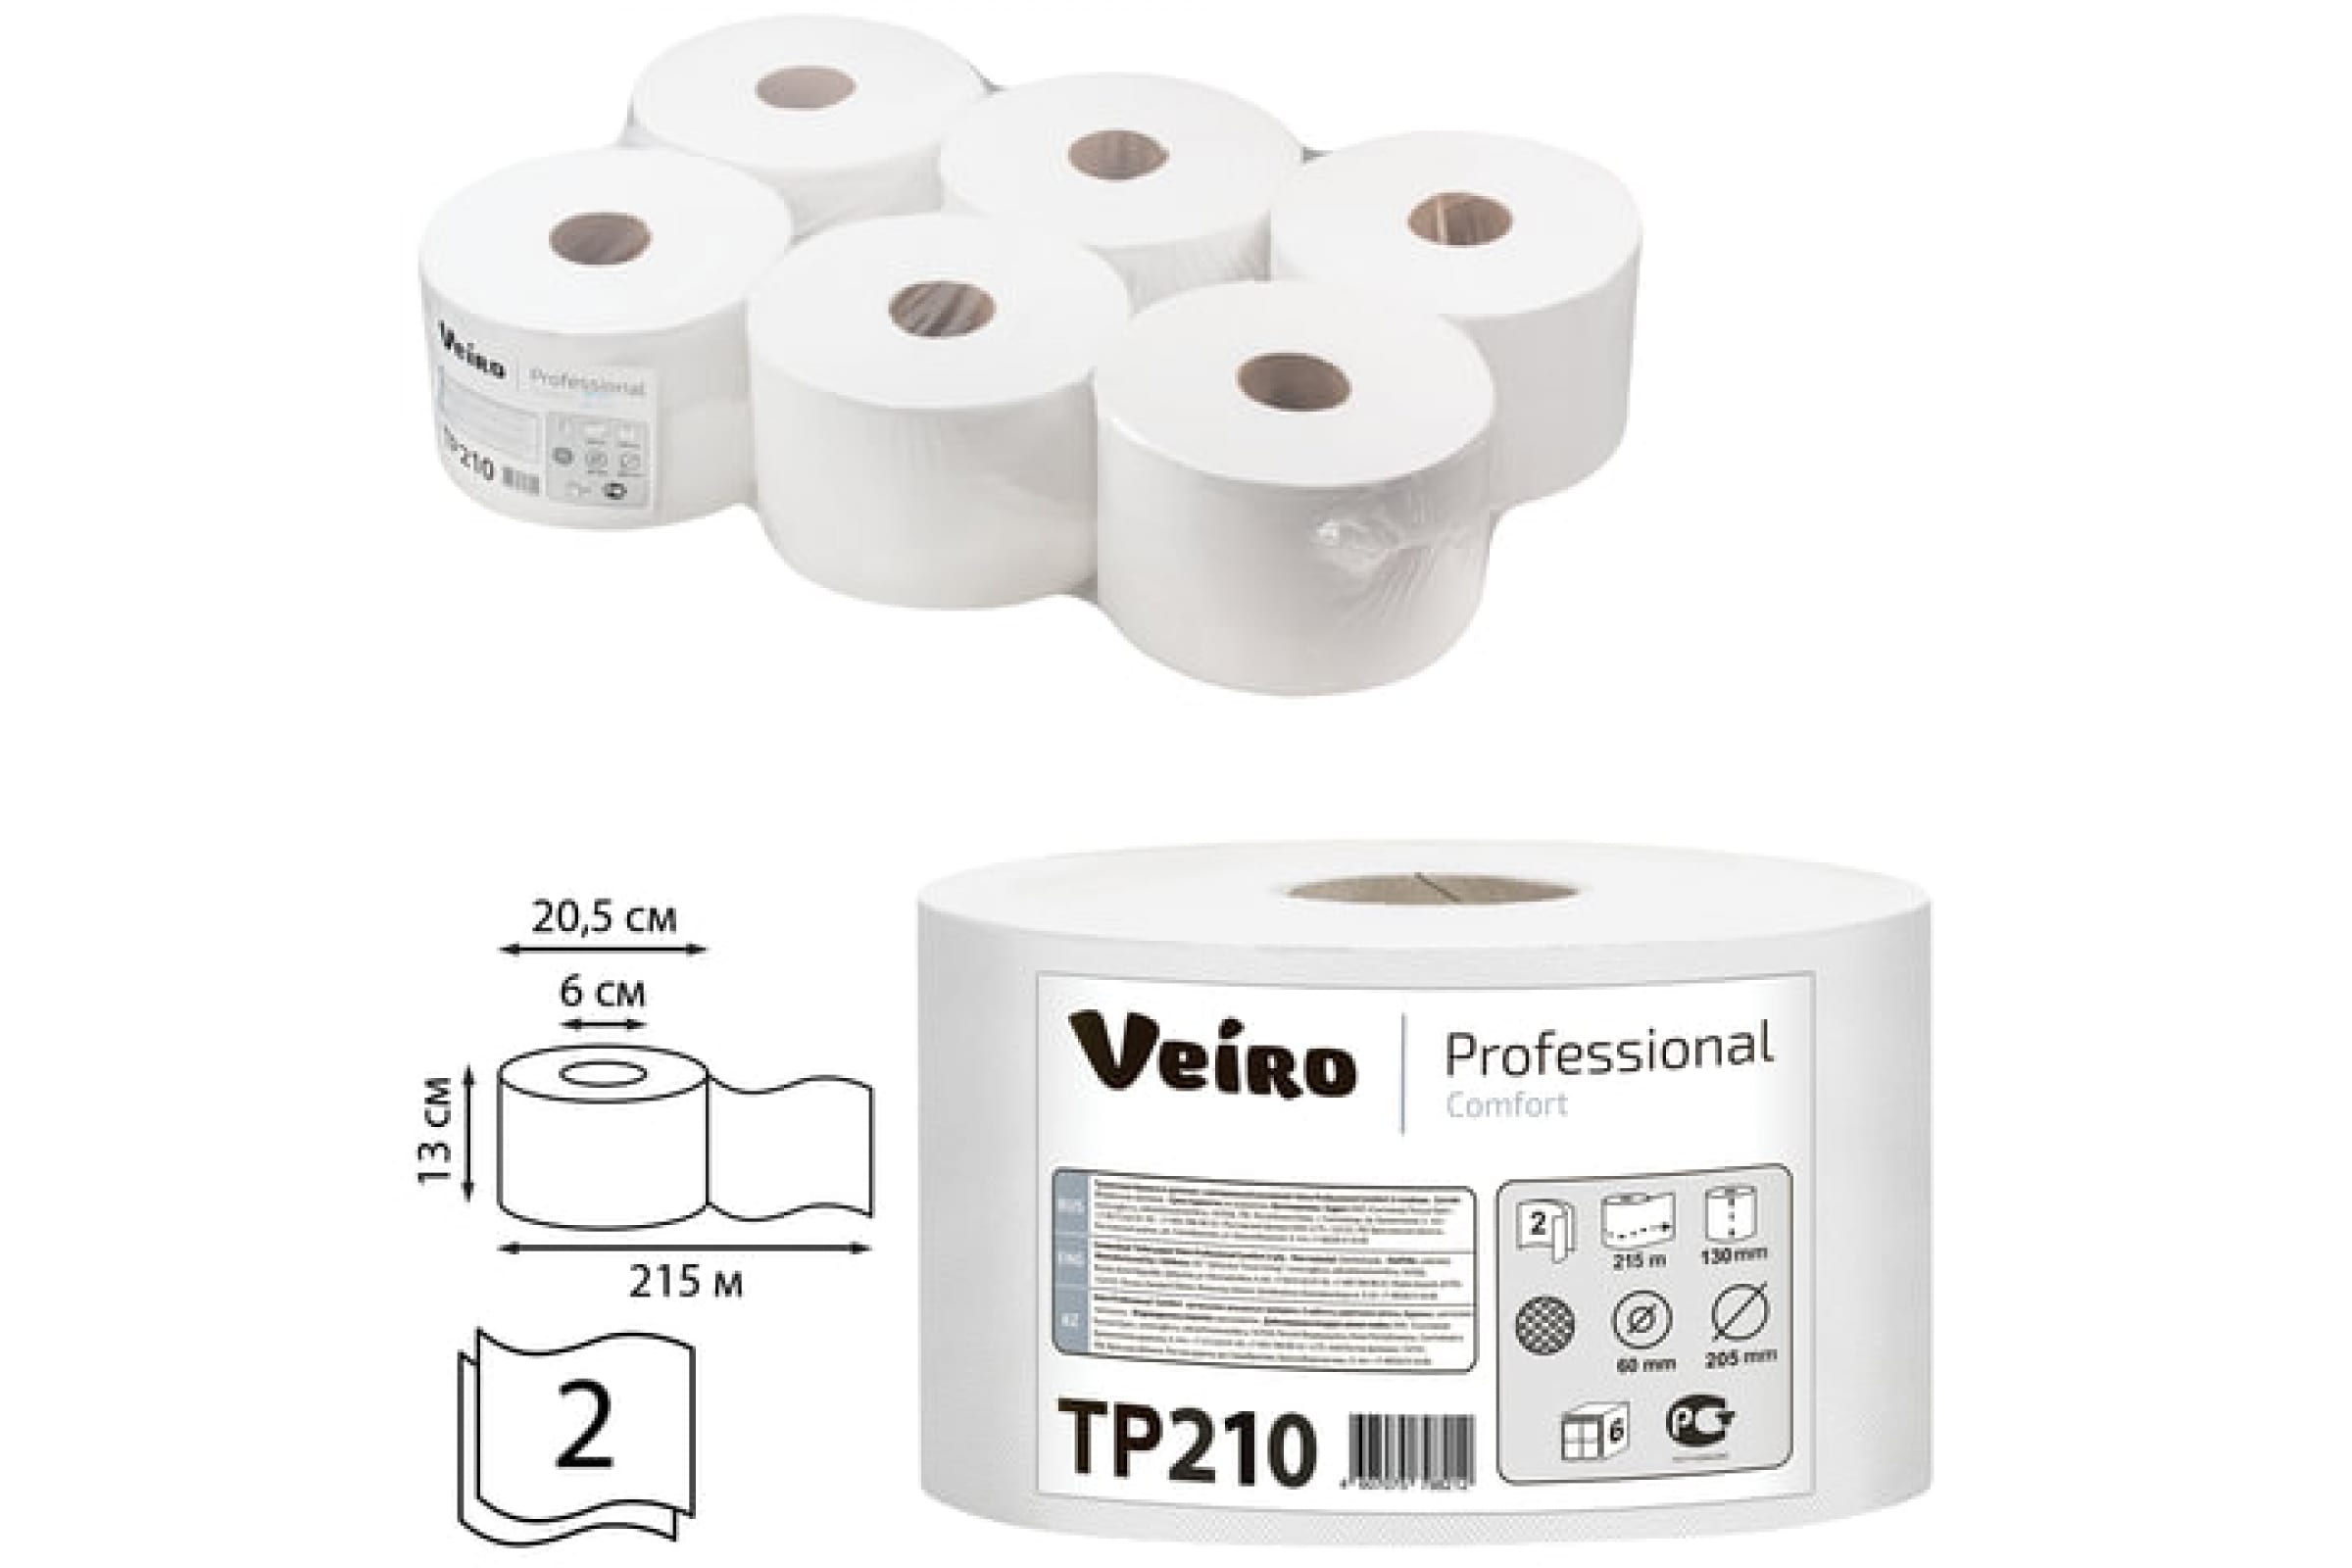 Полотенца бумажные Veiro Professional Comfort T8, слоев: 2, листов 1000шт., длина 215м, белый, 6шт. (TP210)